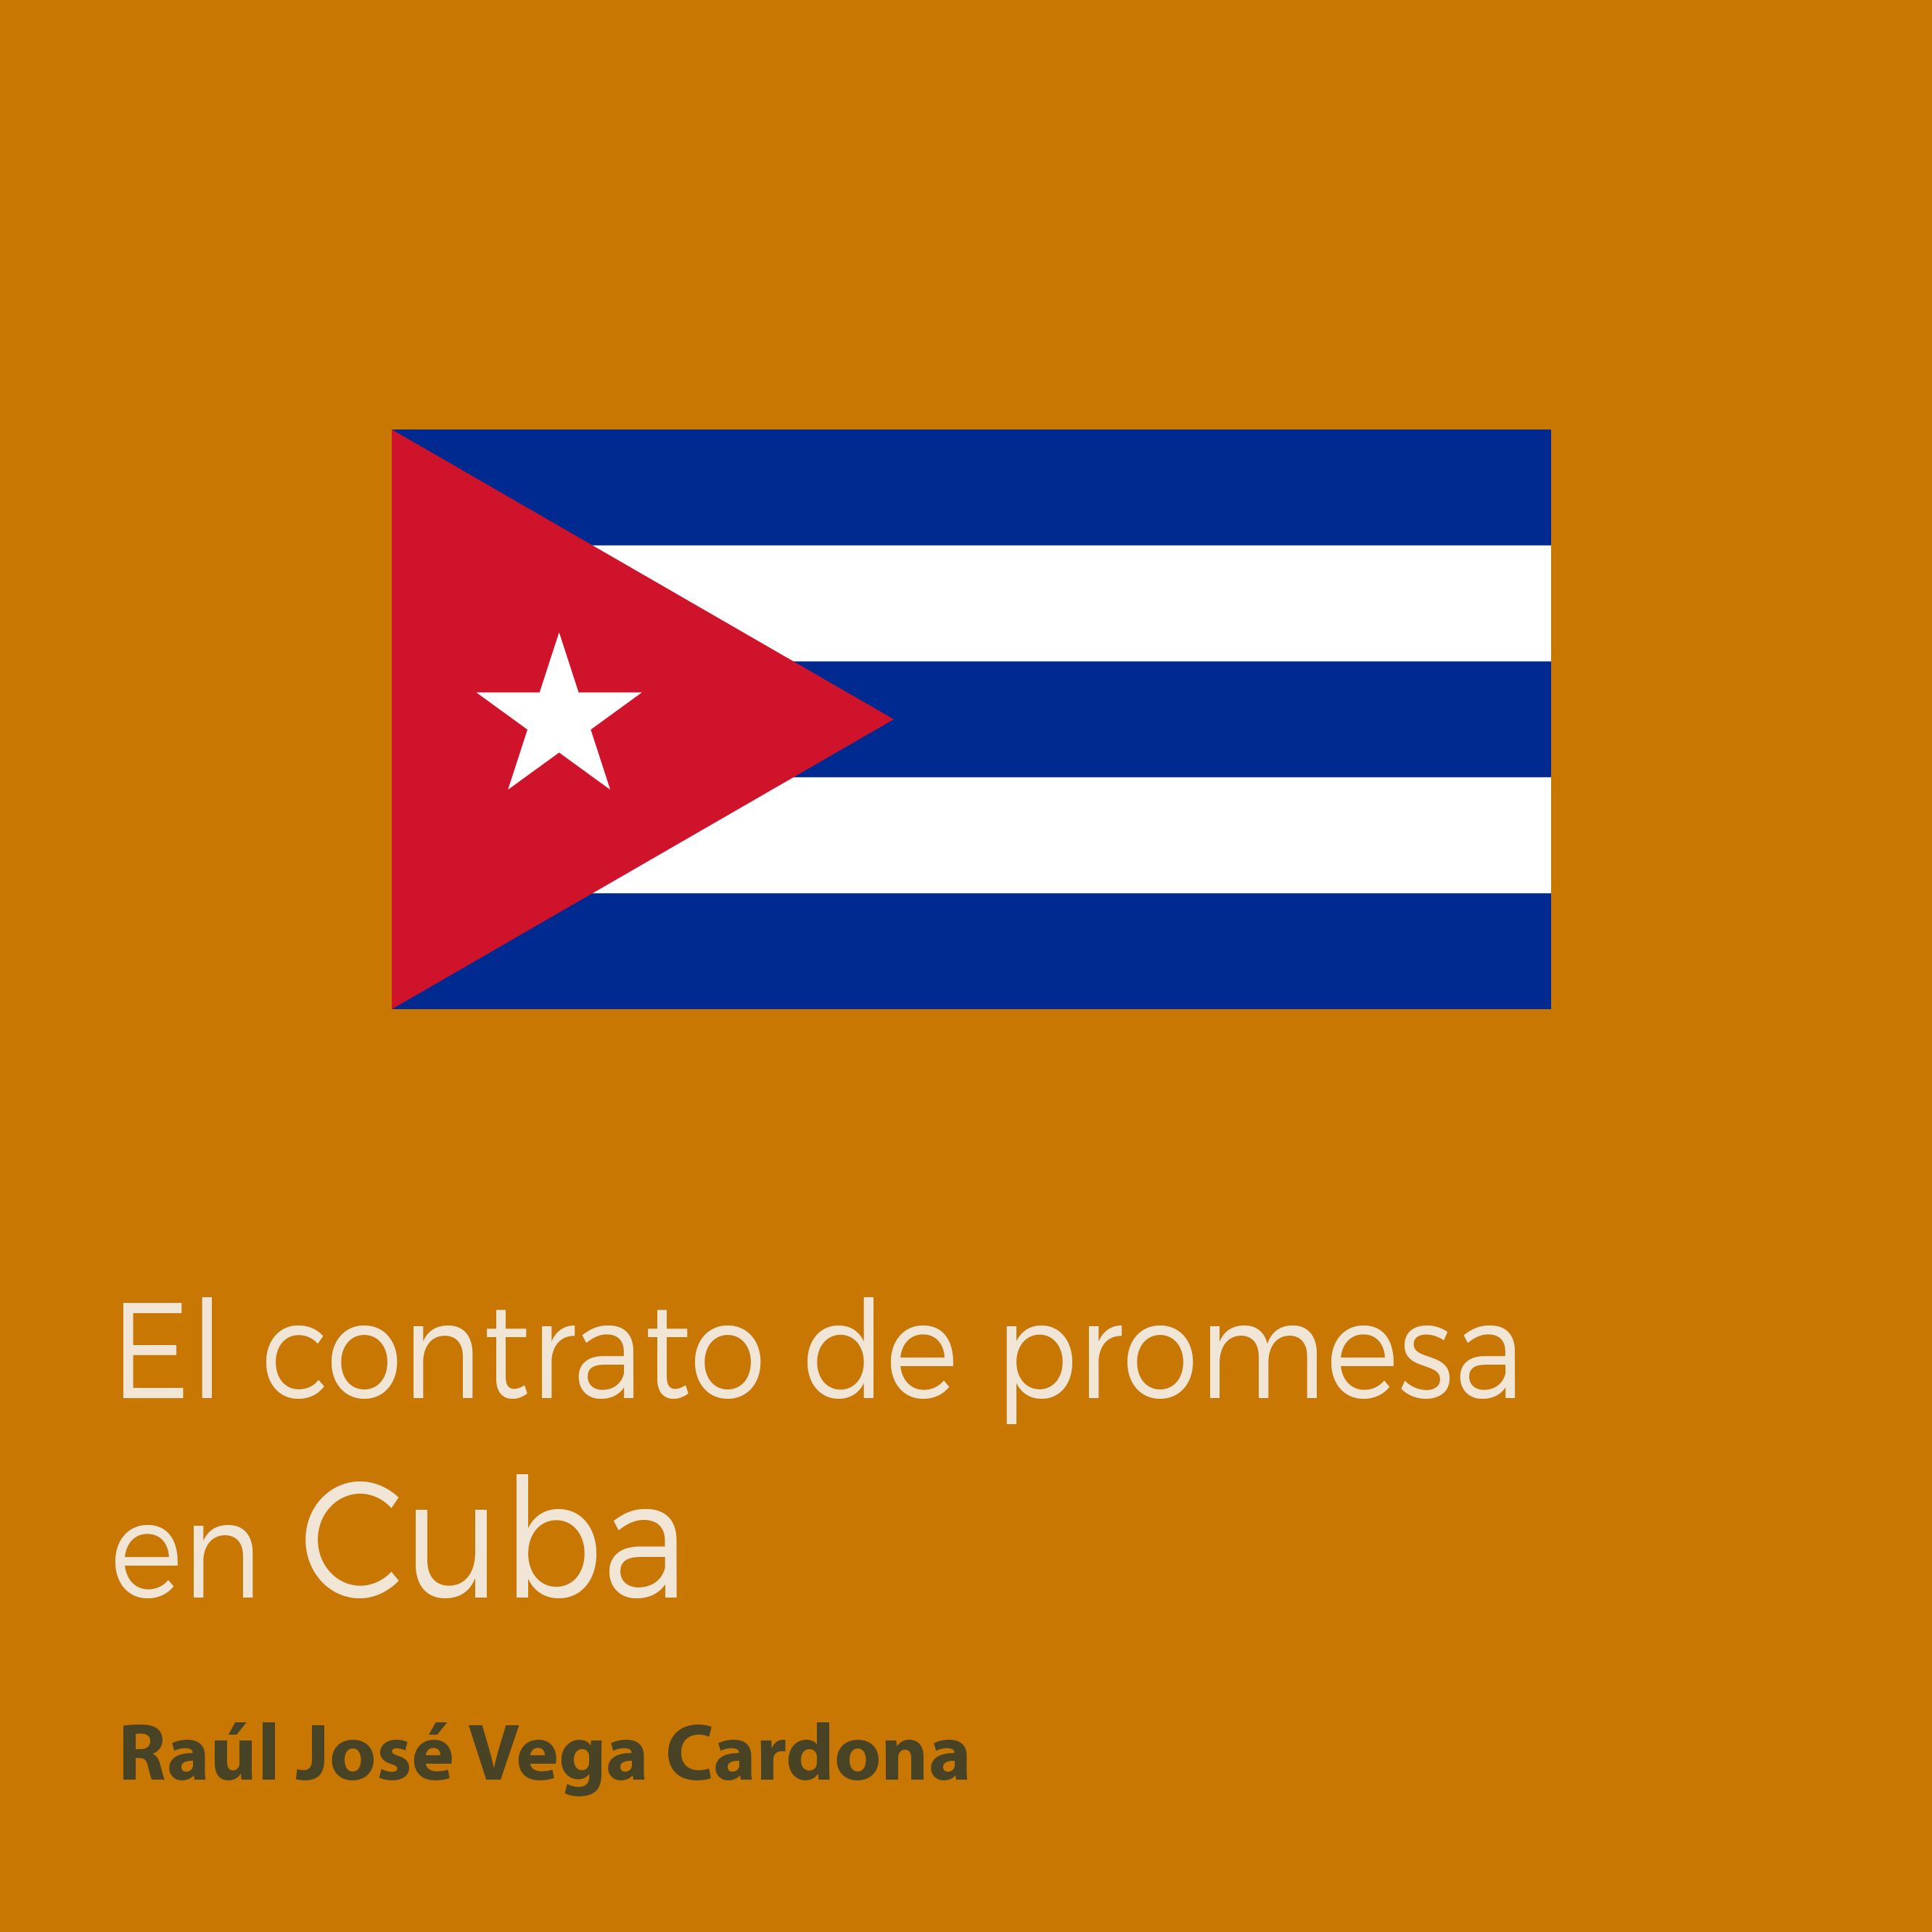 El contrato de promesa en Cuba